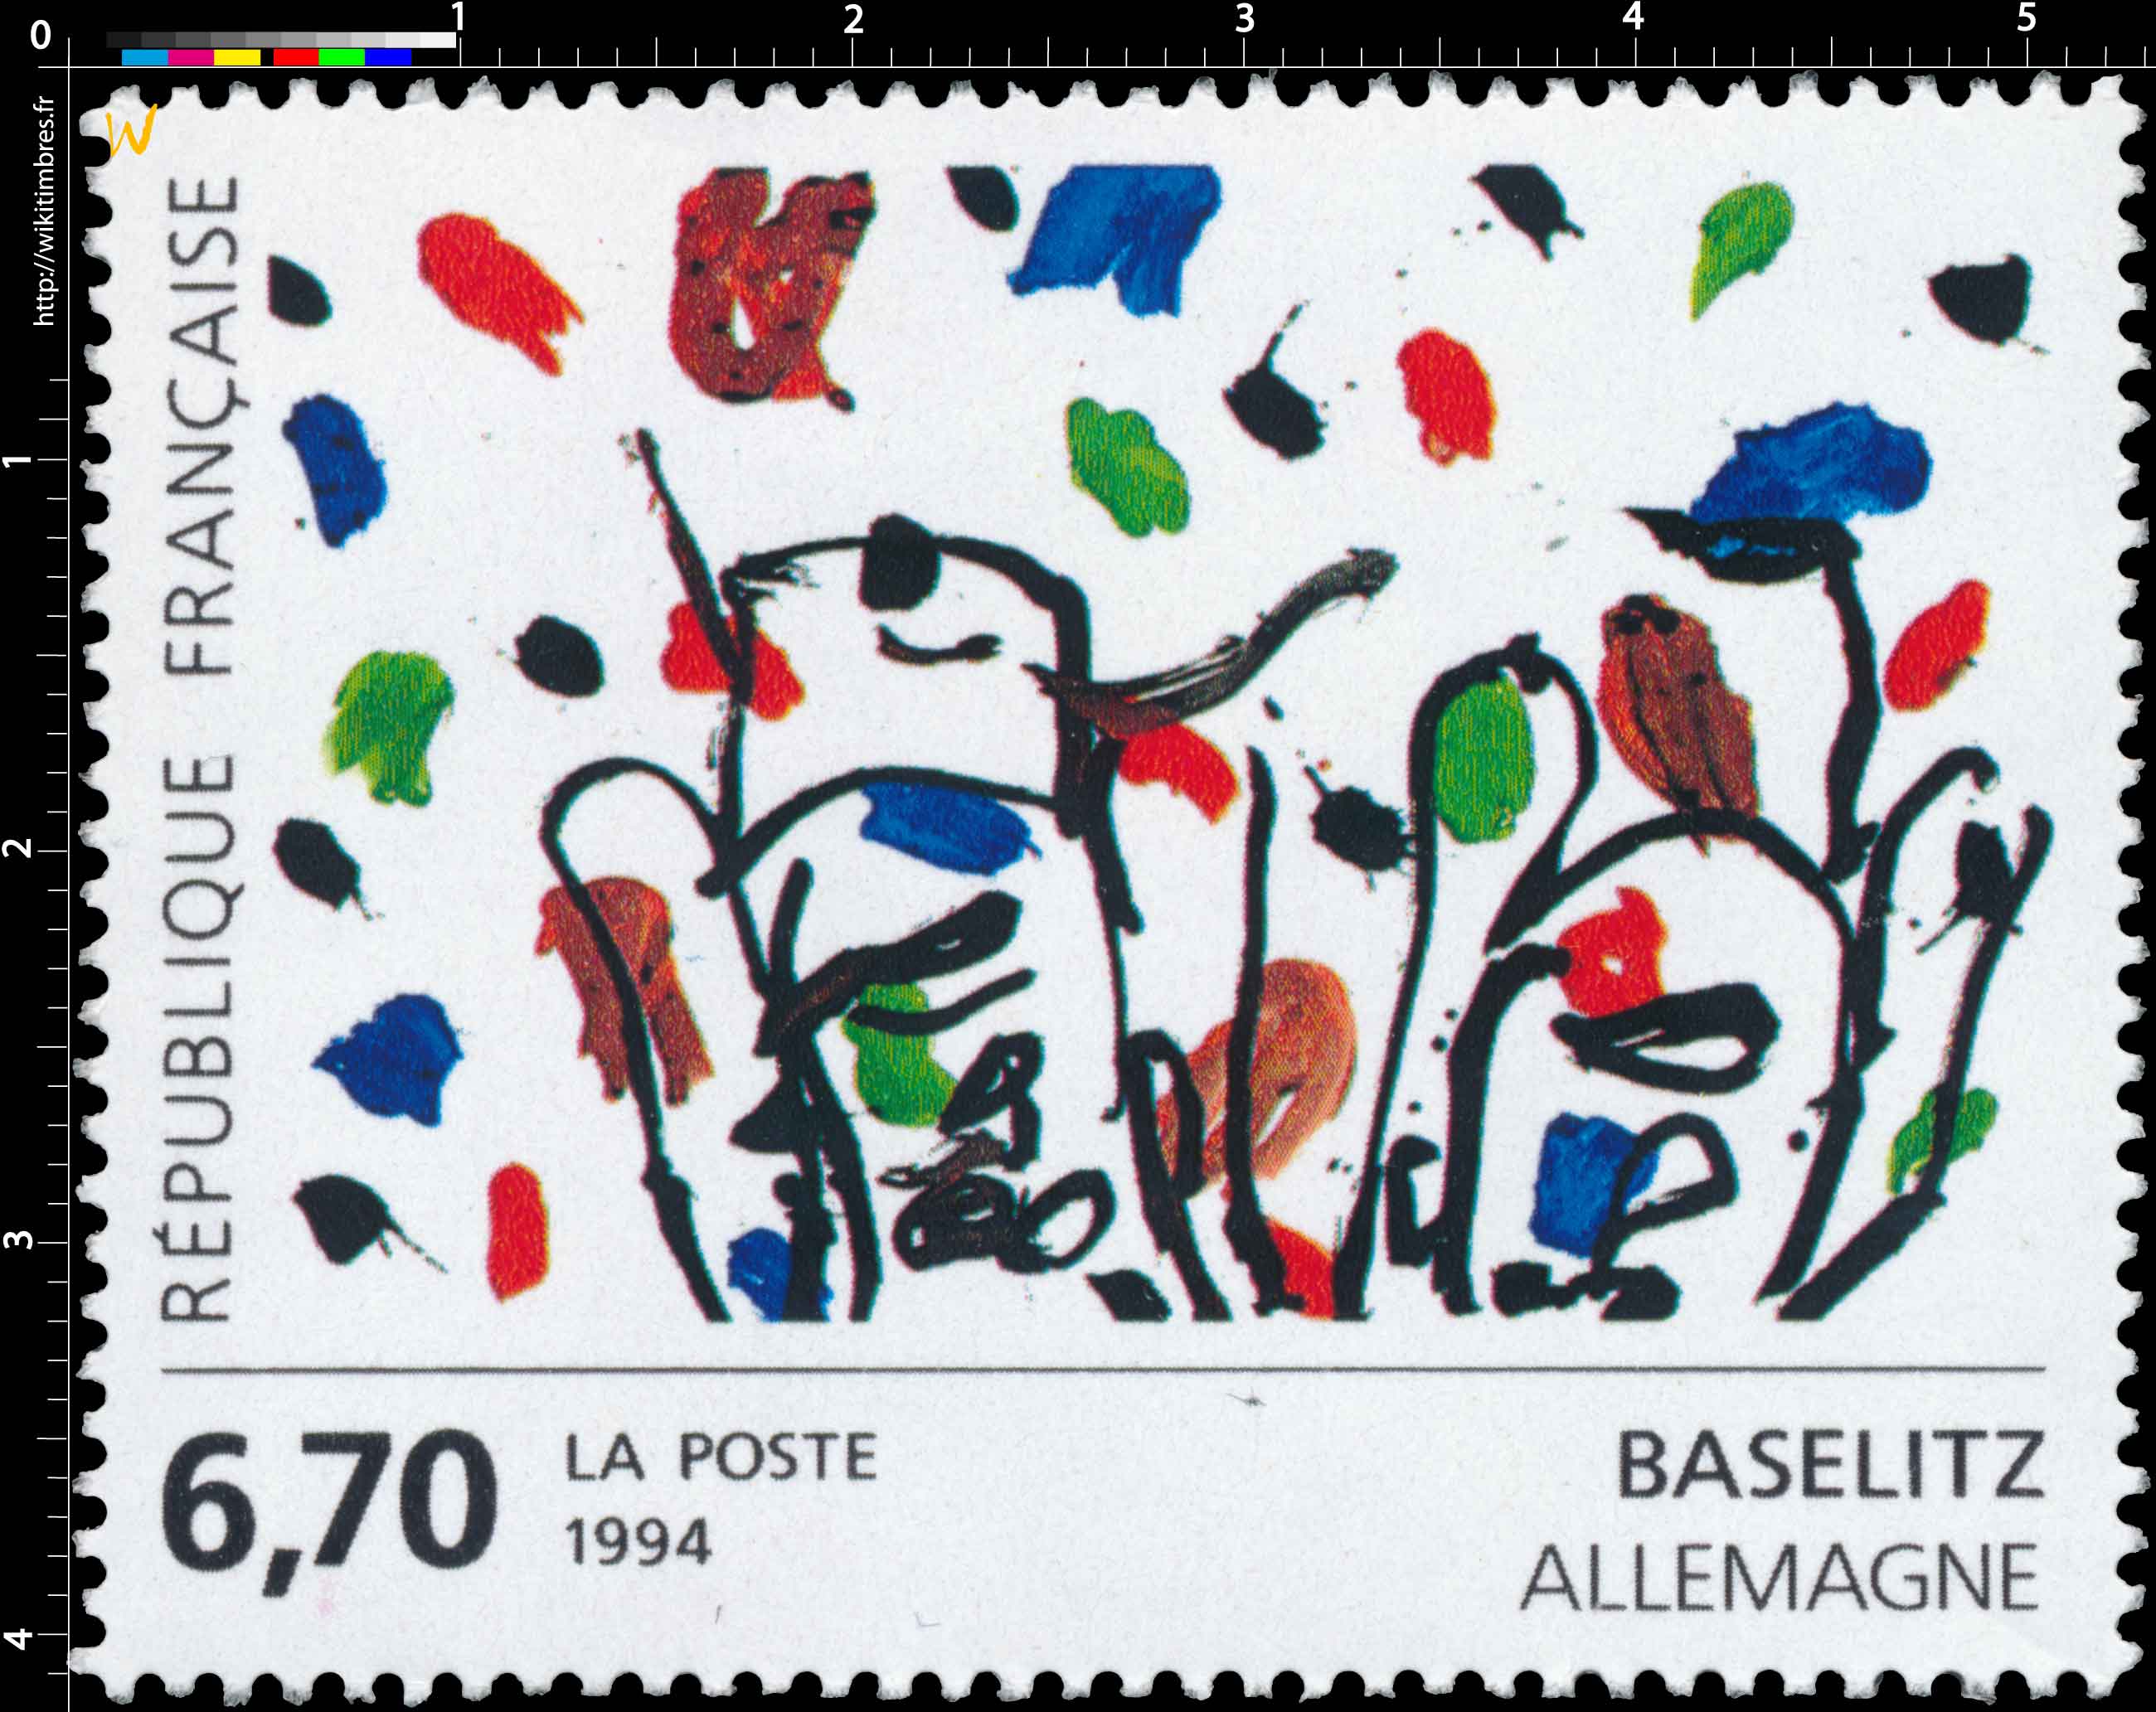 1994 BASELITZ ALLEMAGNE